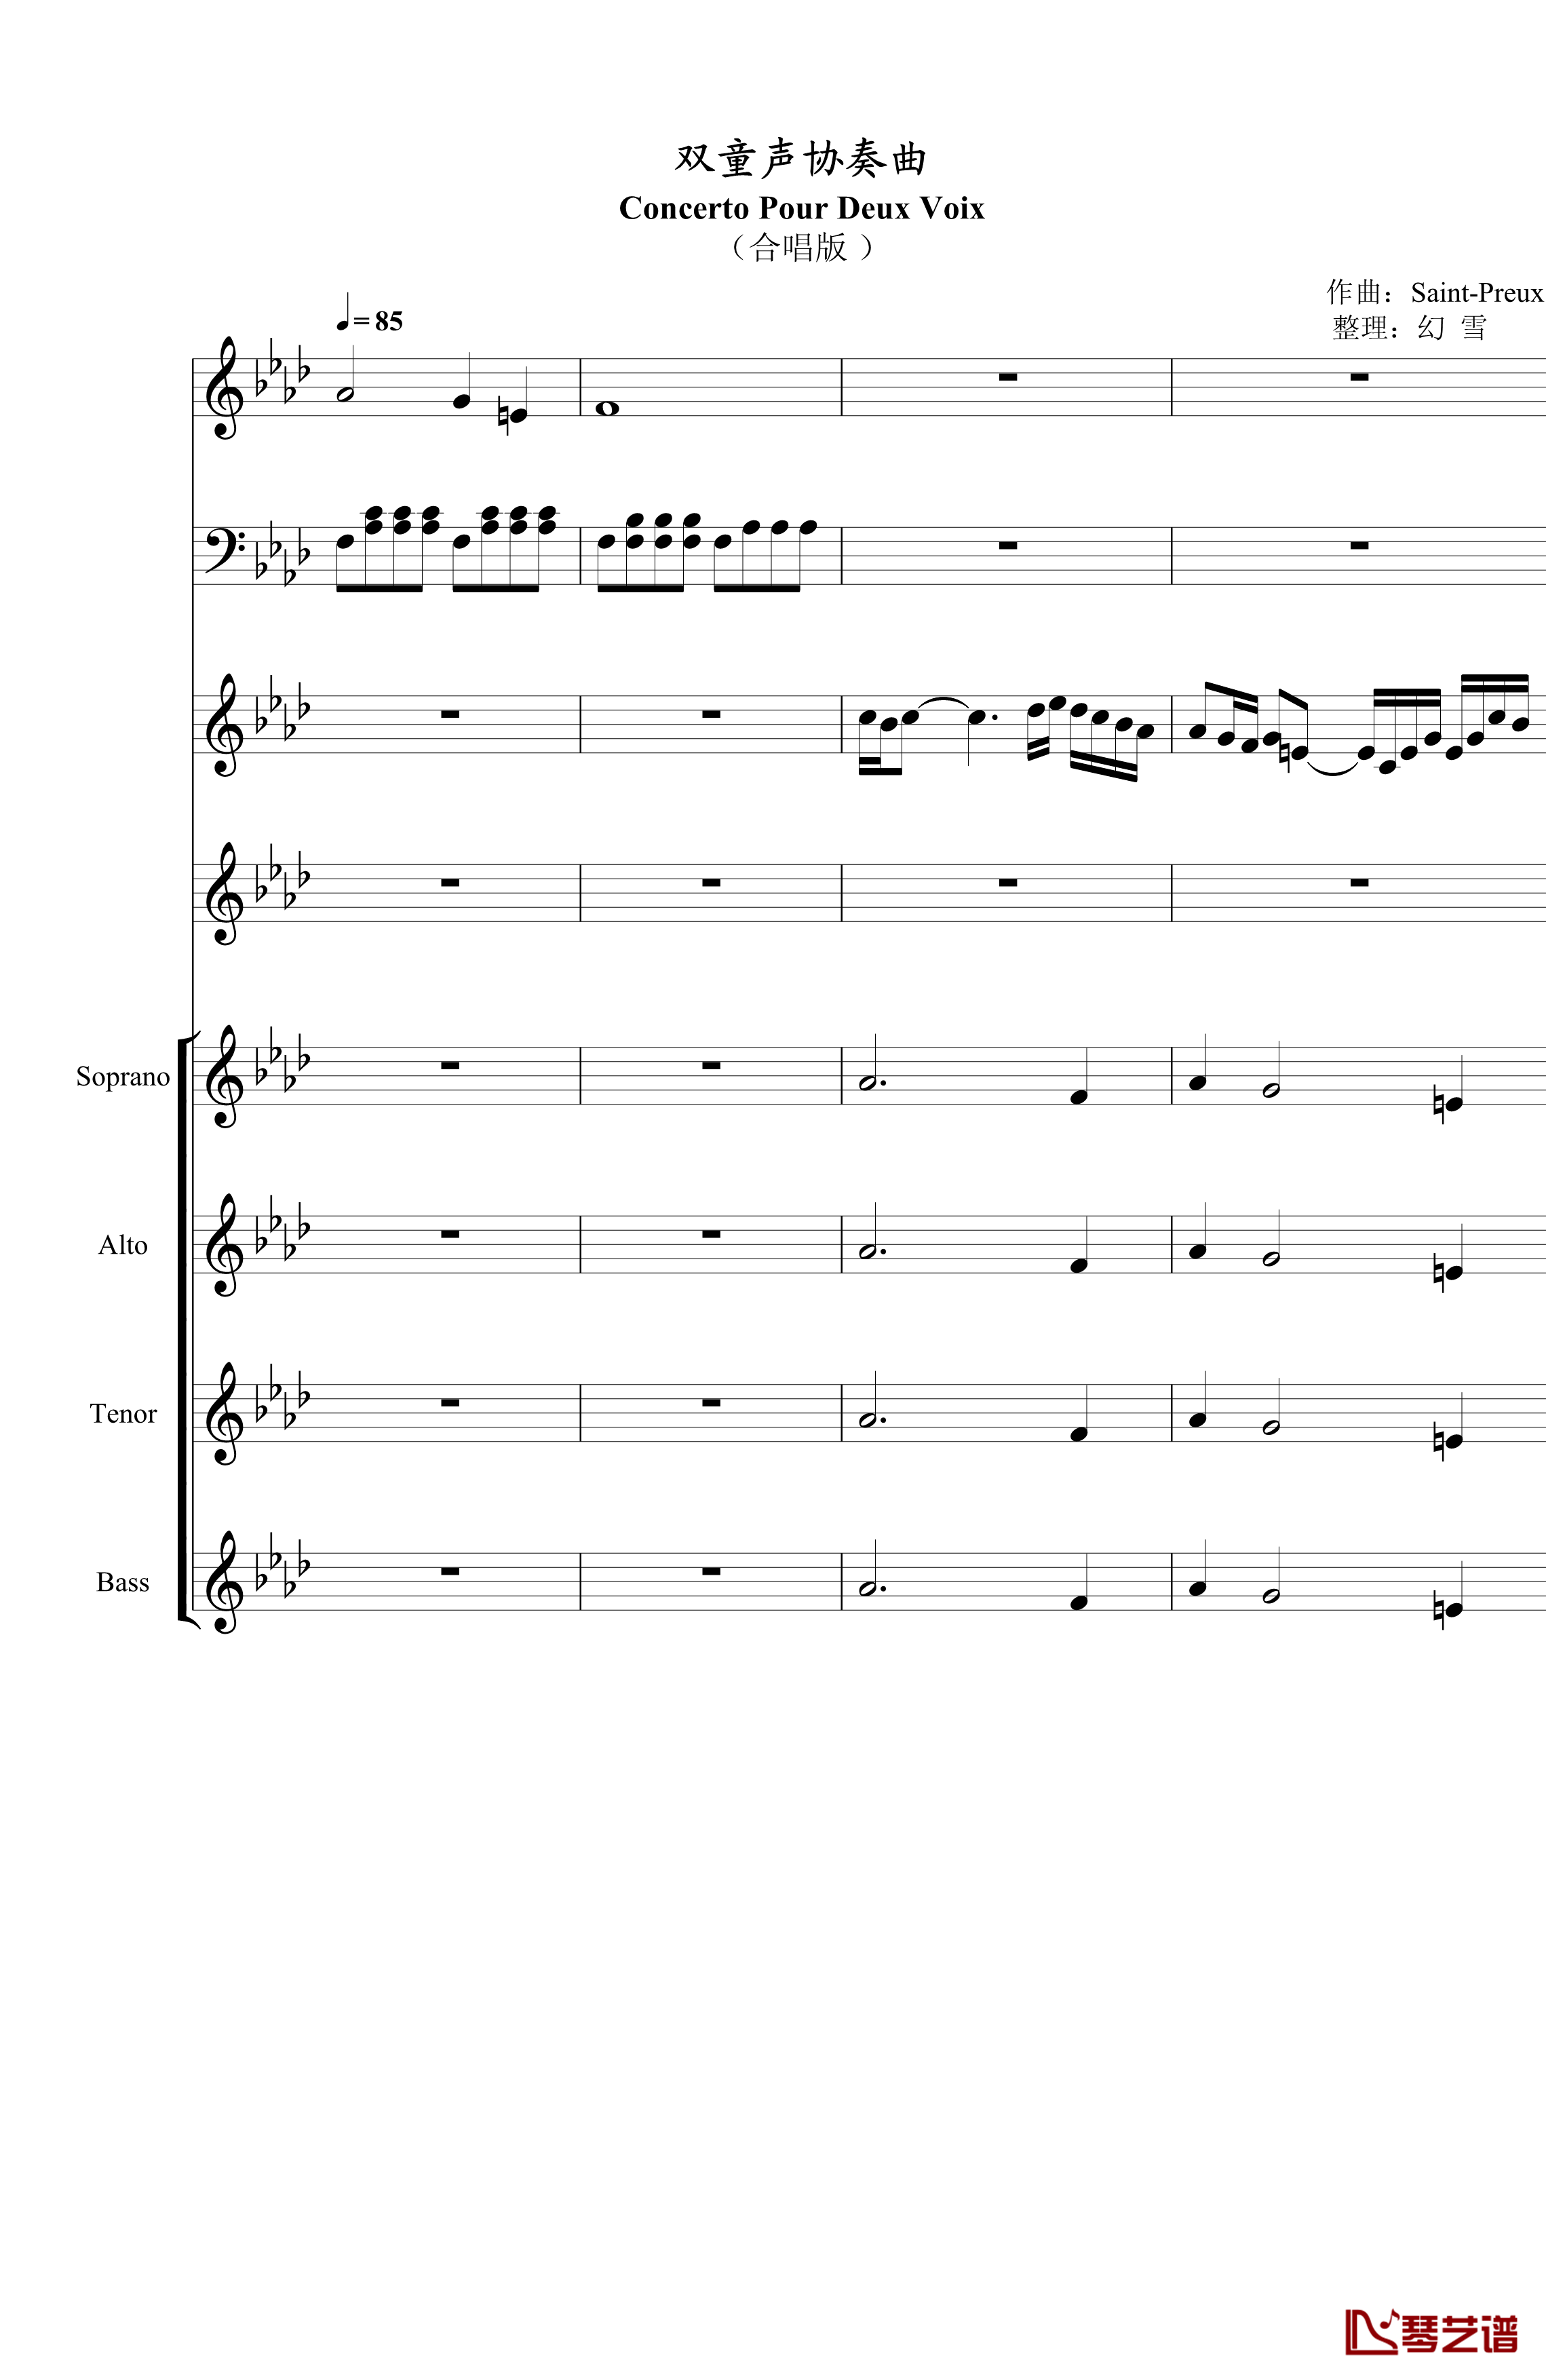 双童声协奏曲钢琴谱-Concerto Pour Deux Voix-合唱版-Saint-Preux1